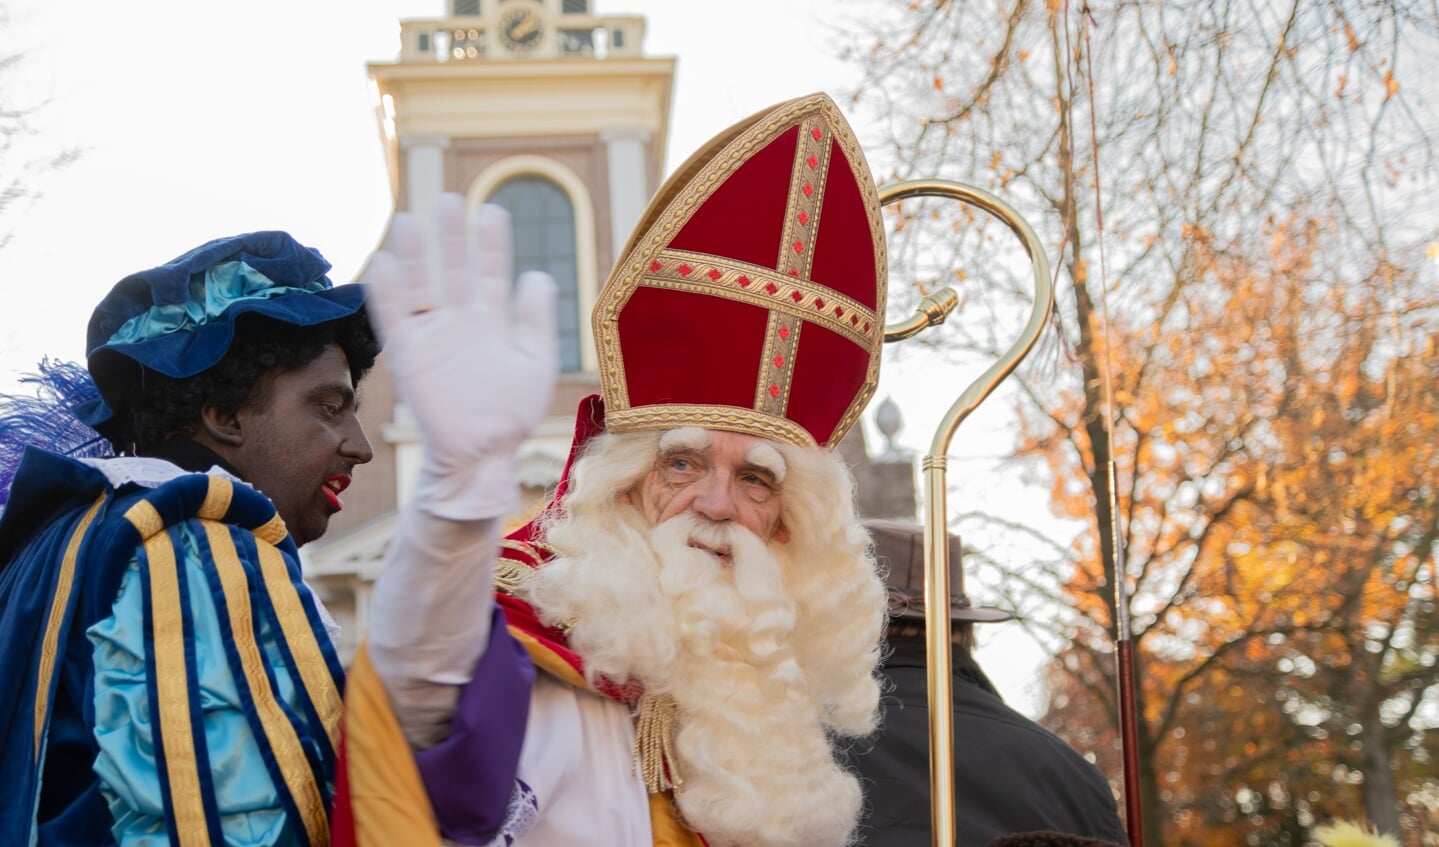 Sinterklaas zwaaide vanaf zijn koets naar het toegestroomde publiek.